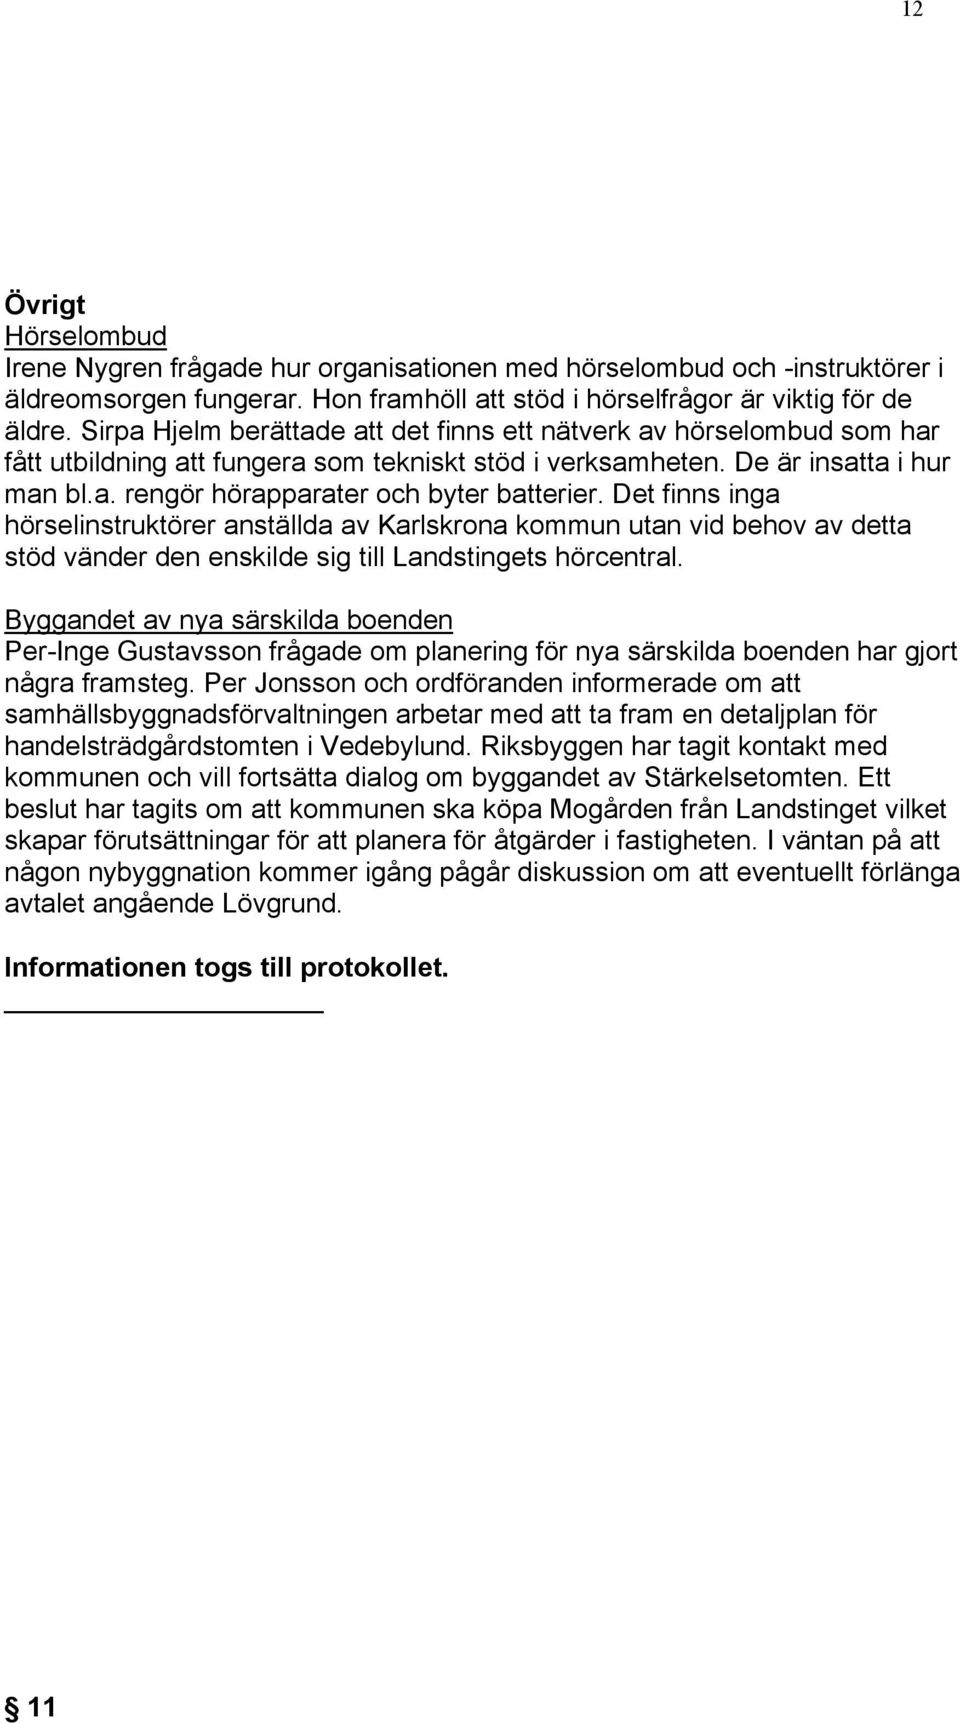 Det finns inga hörselinstruktörer anställda av Karlskrona kommun utan vid behov av detta stöd vänder den enskilde sig till Landstingets hörcentral.